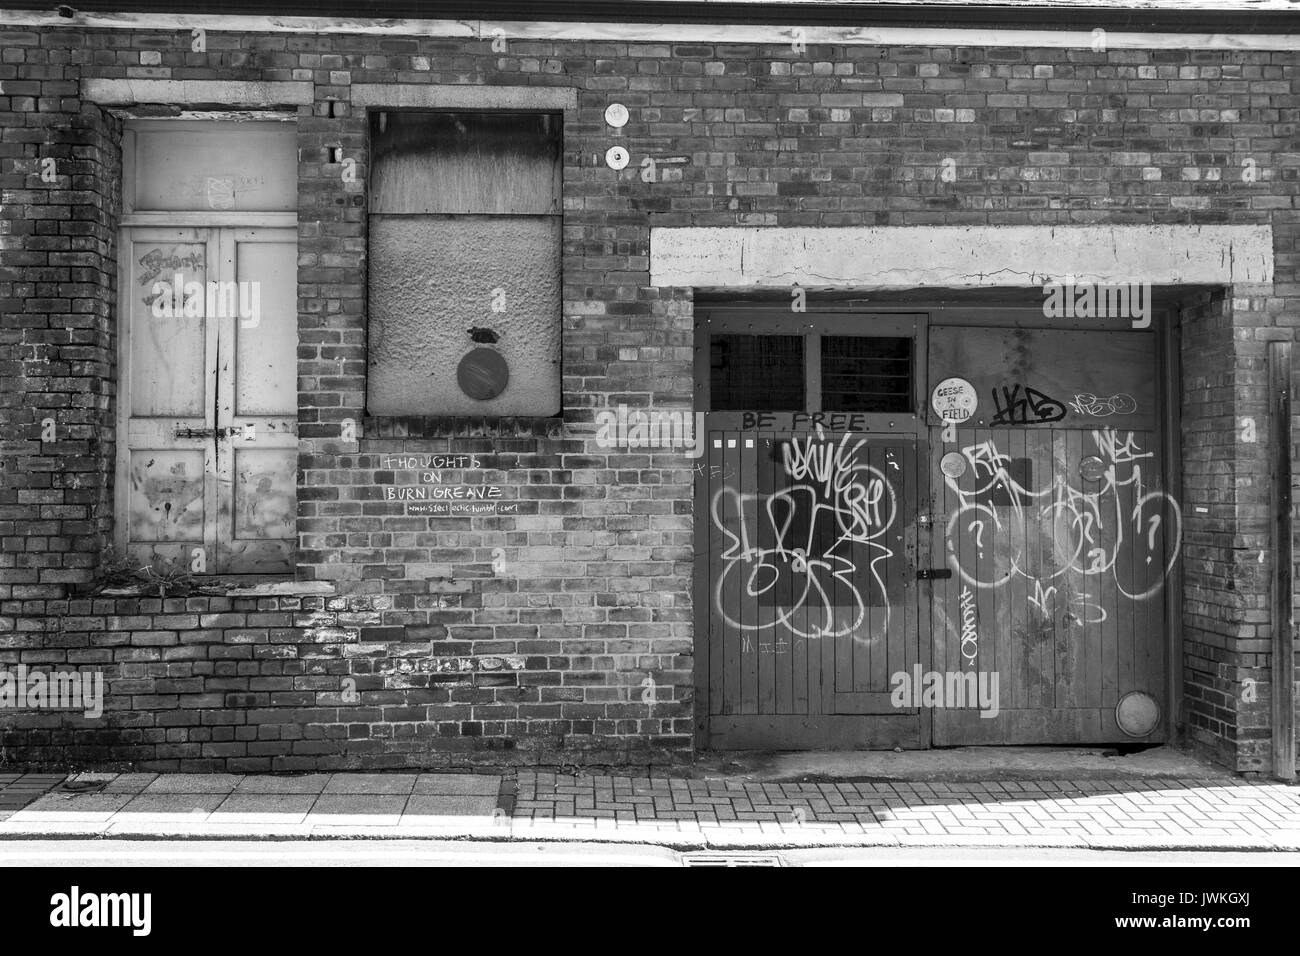 Bâtiment abandonné, abandonné, déserté, scellé, arraisonné fenêtres, délabré, zone urbaine, brique extérieure, dans les ruines, emplacement inoccupé Graffiti Banque D'Images